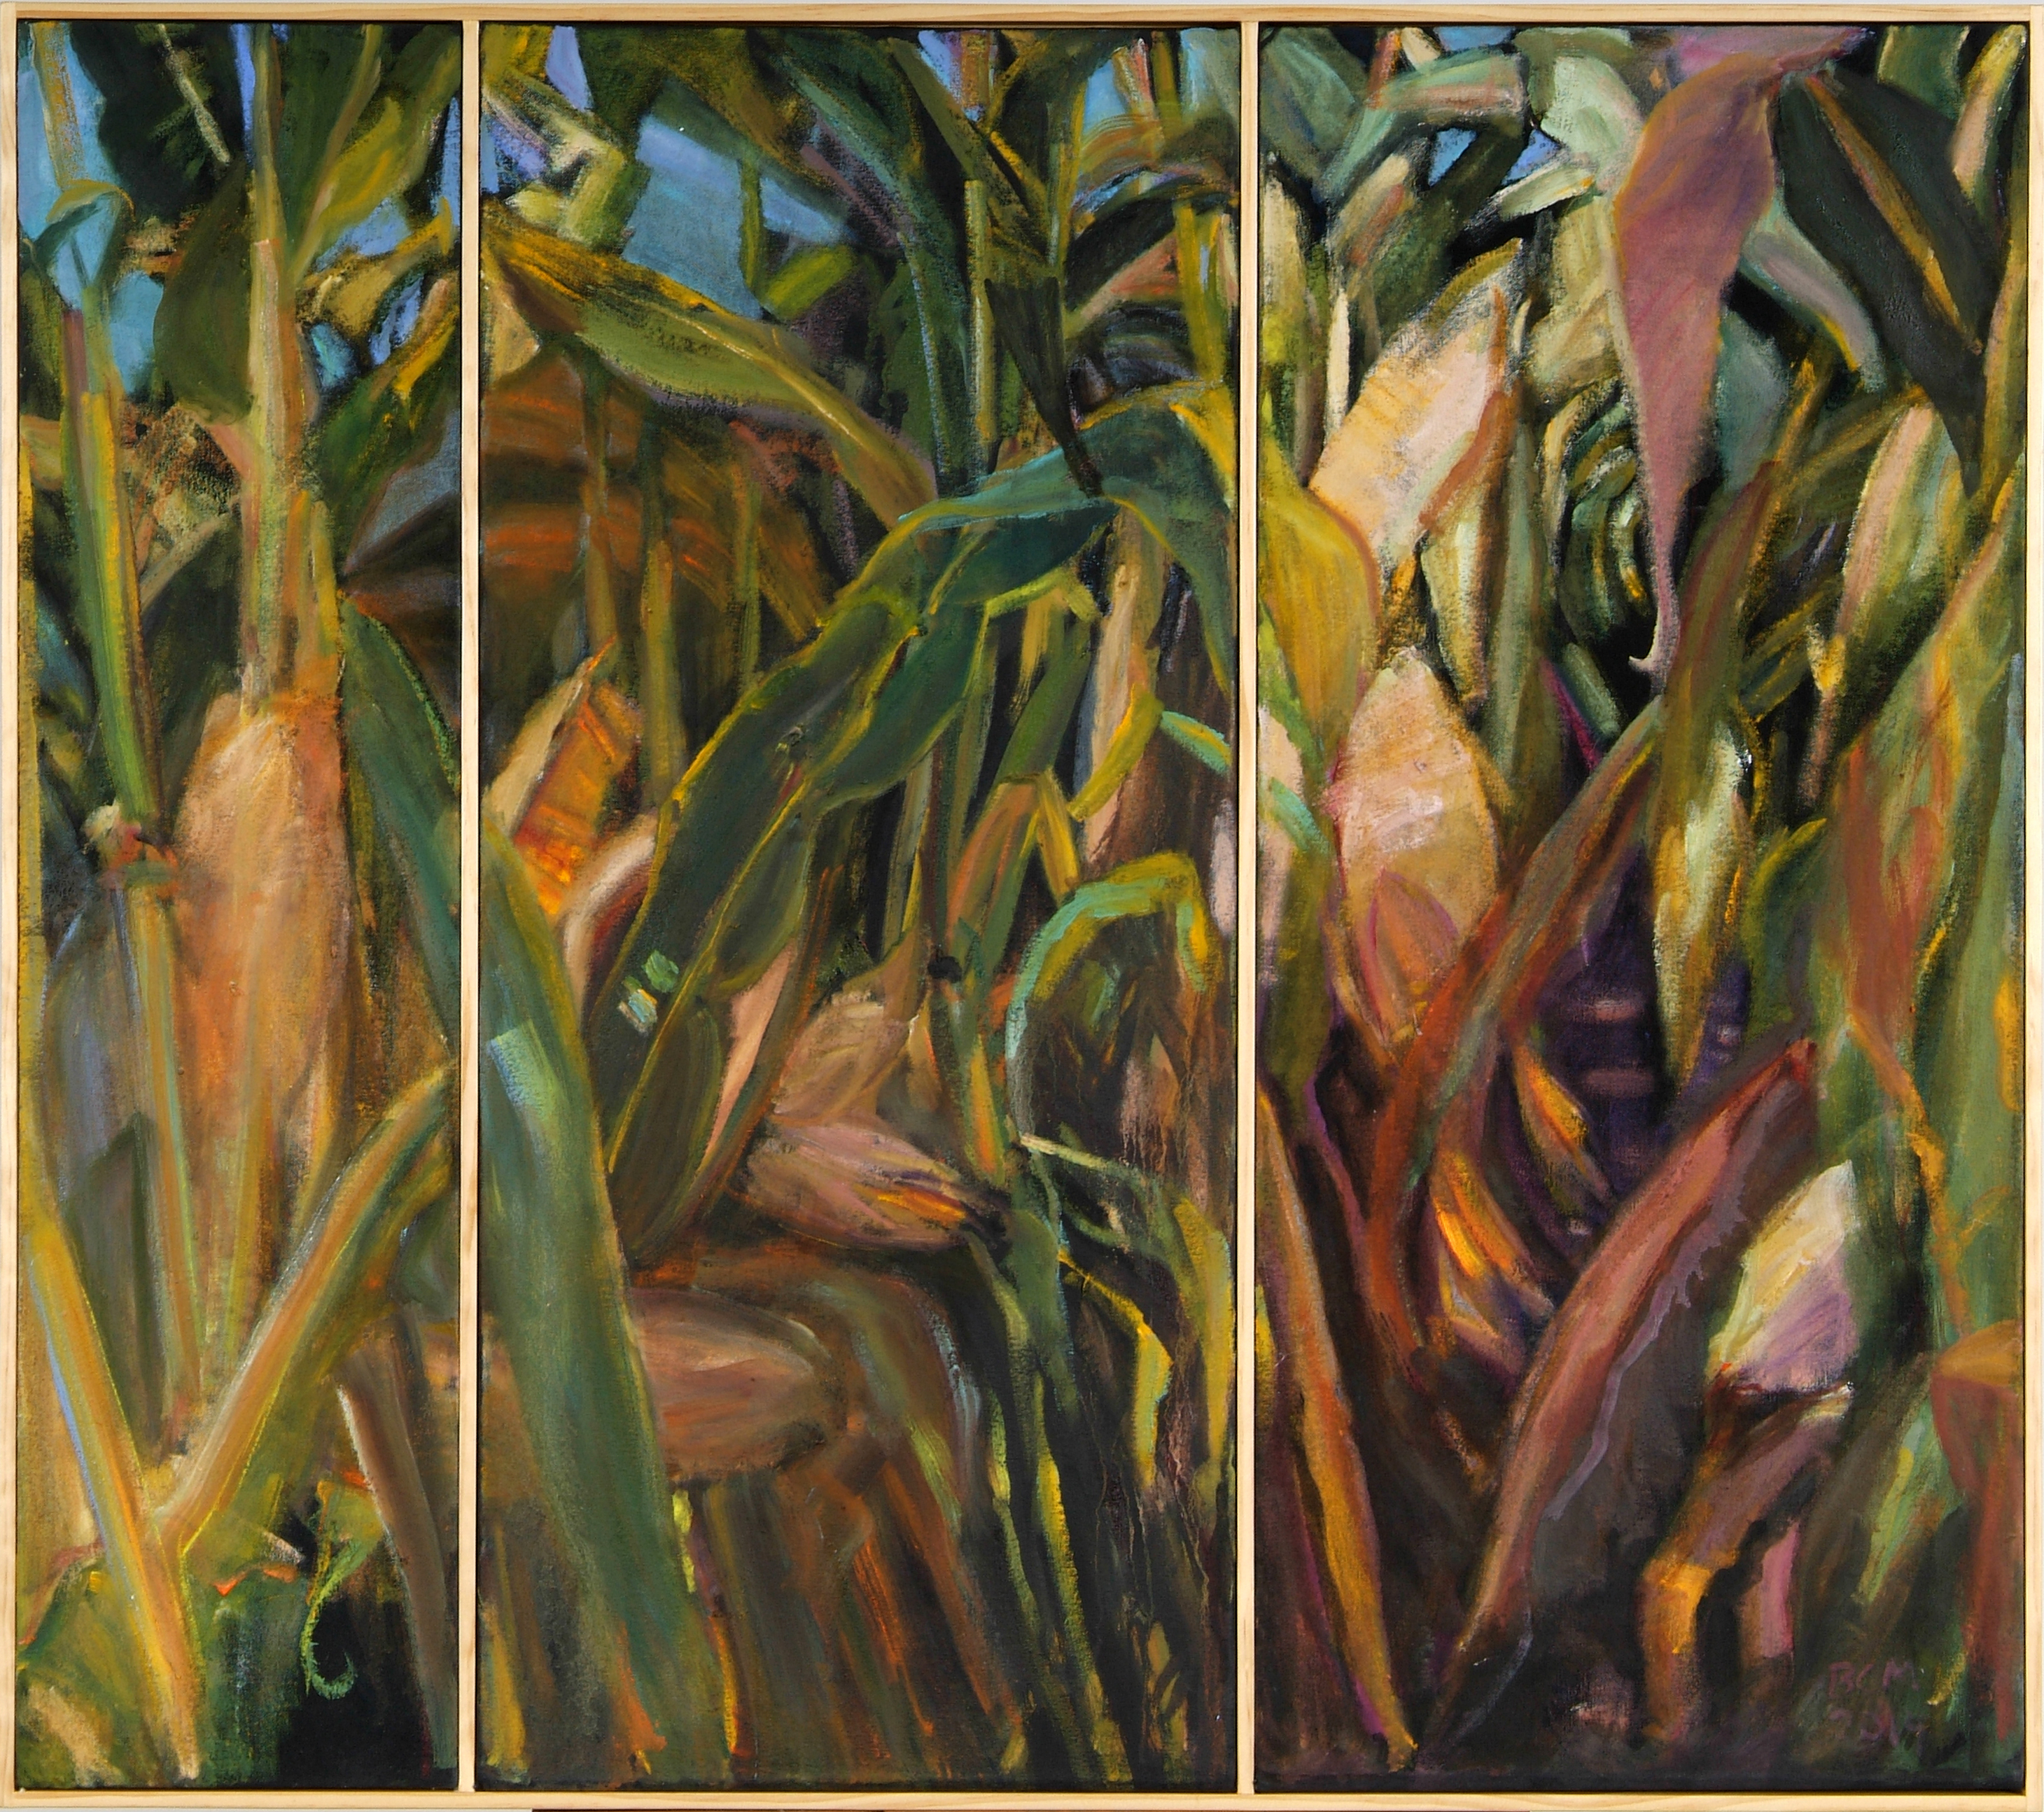 02 Corn Triptych 2014